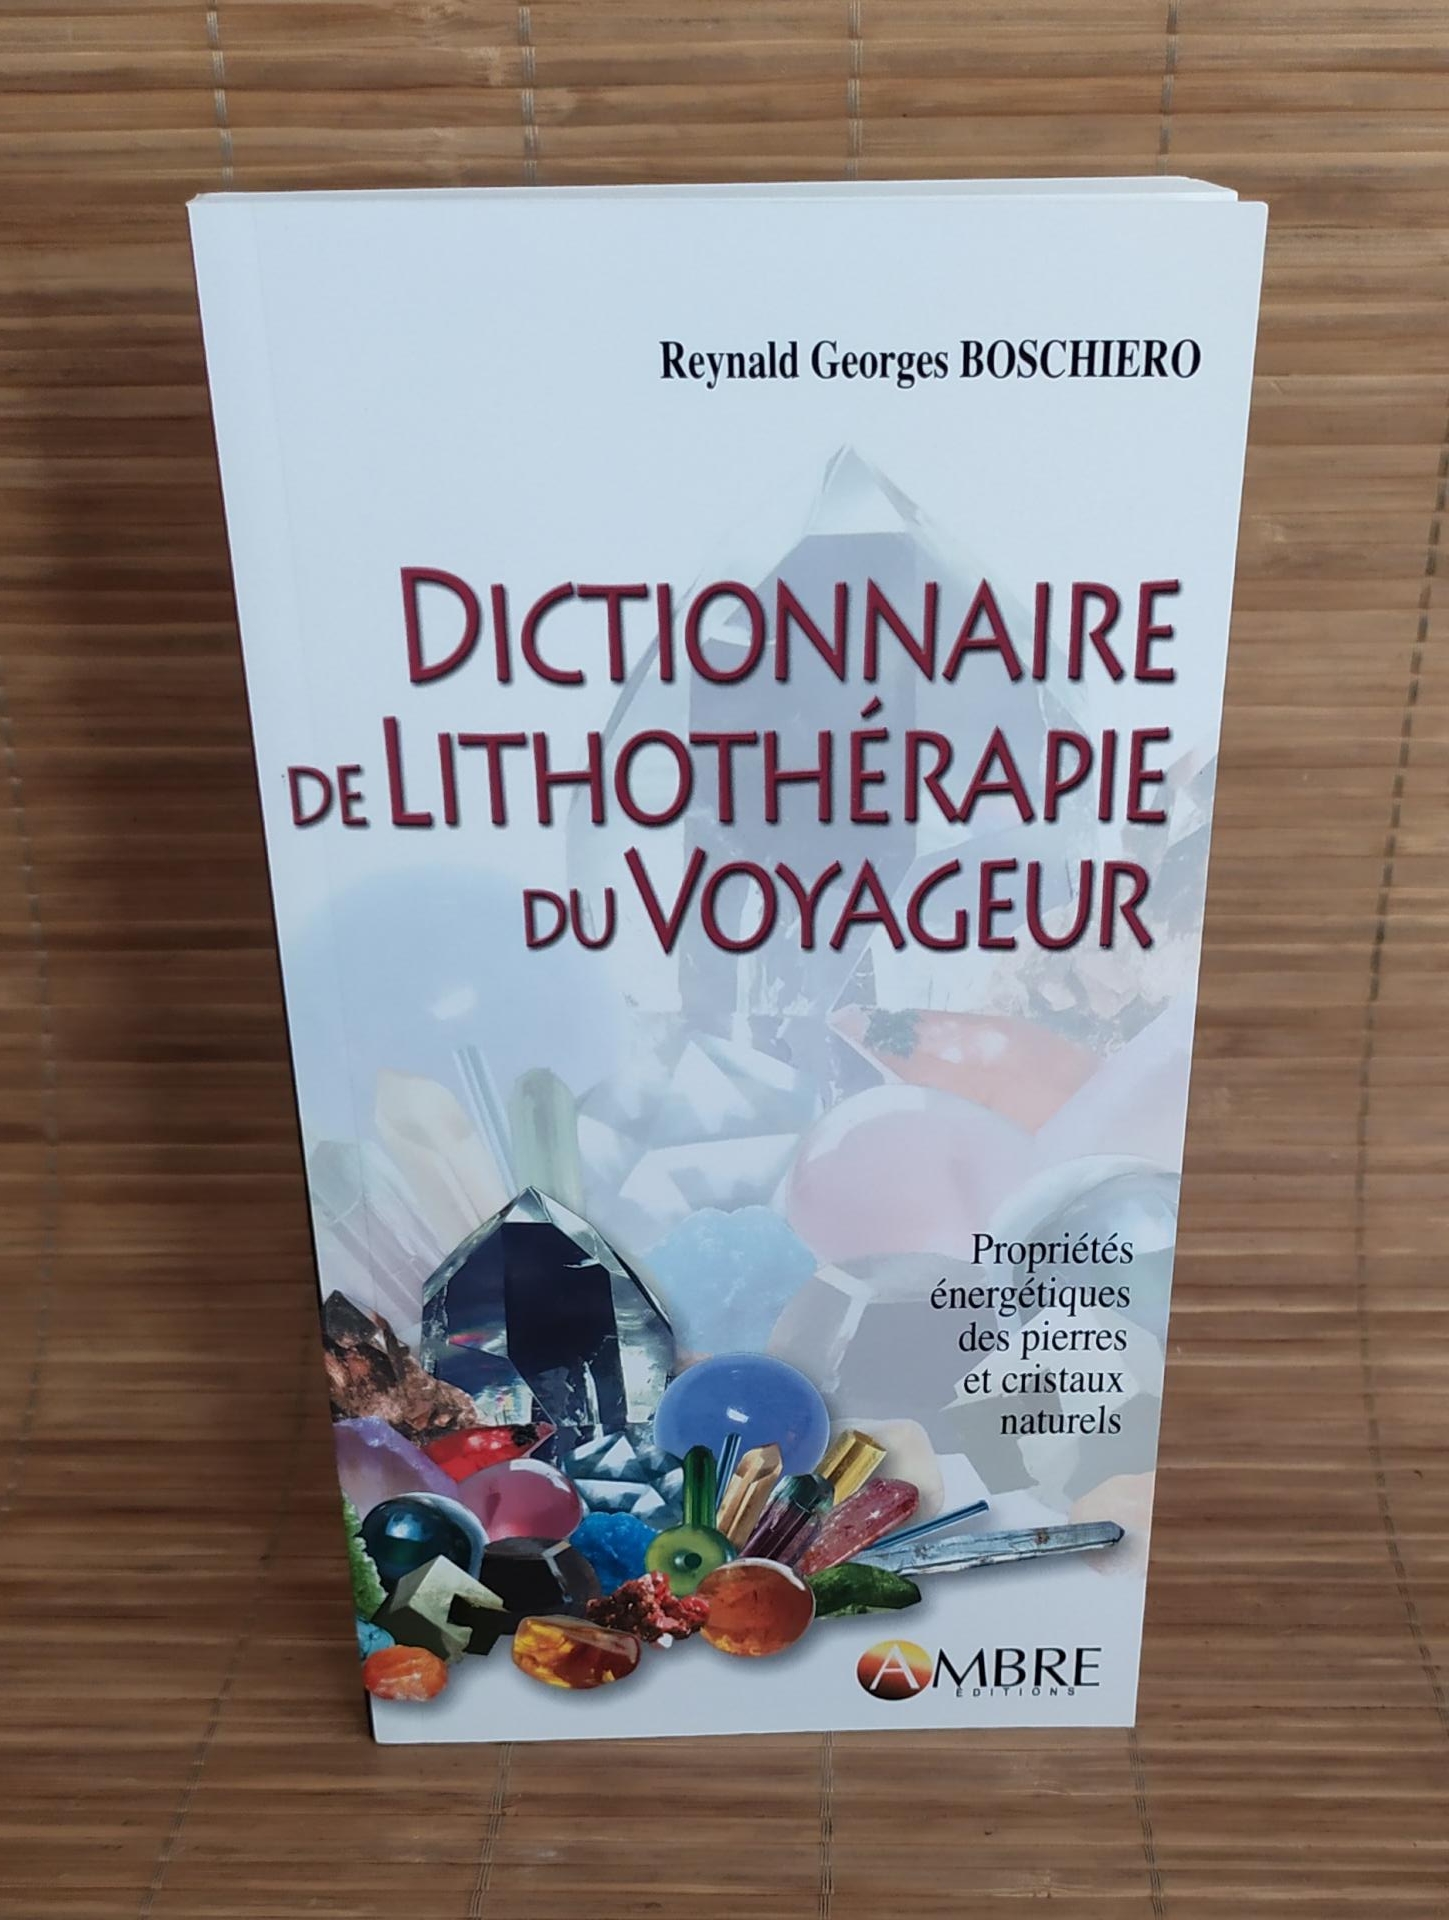 Dictionnaire de lithotherapie du voyageur